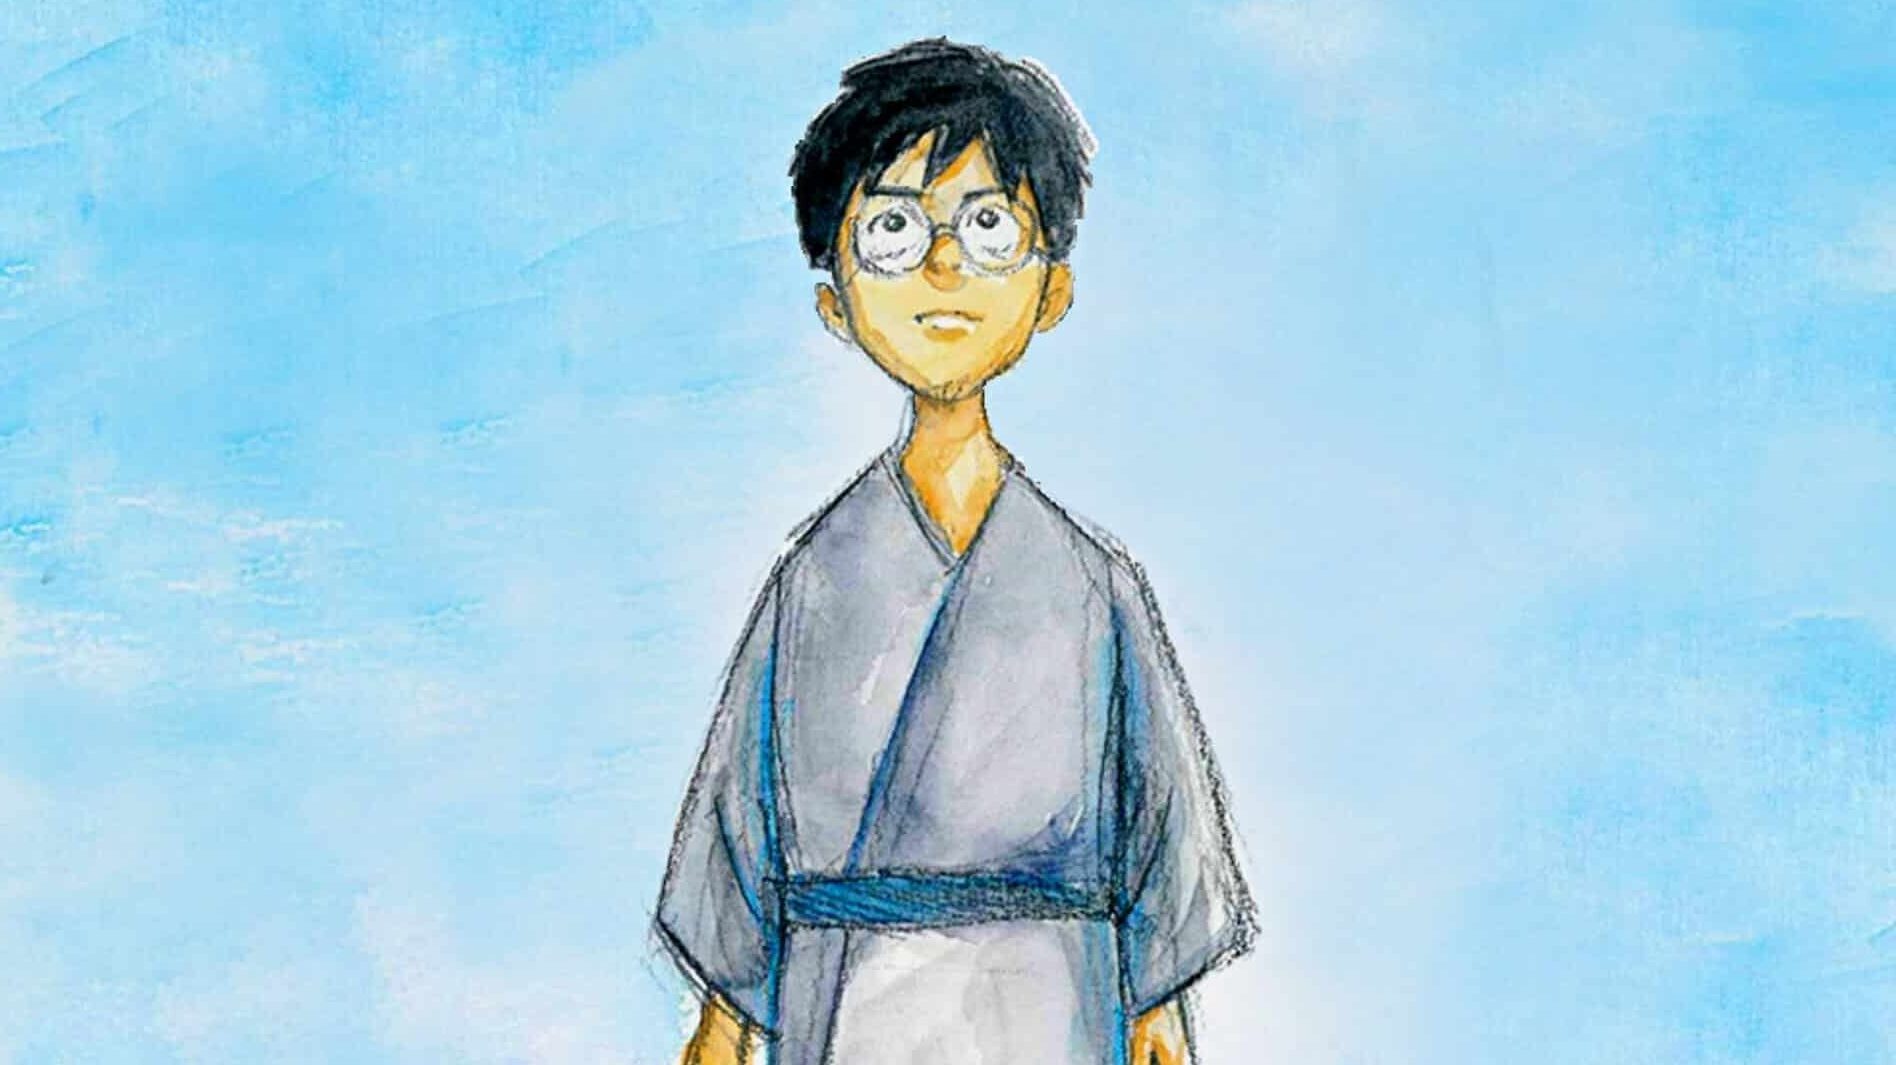 Novo filme do Studio Ghibli chega aos cinemas em 2023 - GKPB - Geek  Publicitário